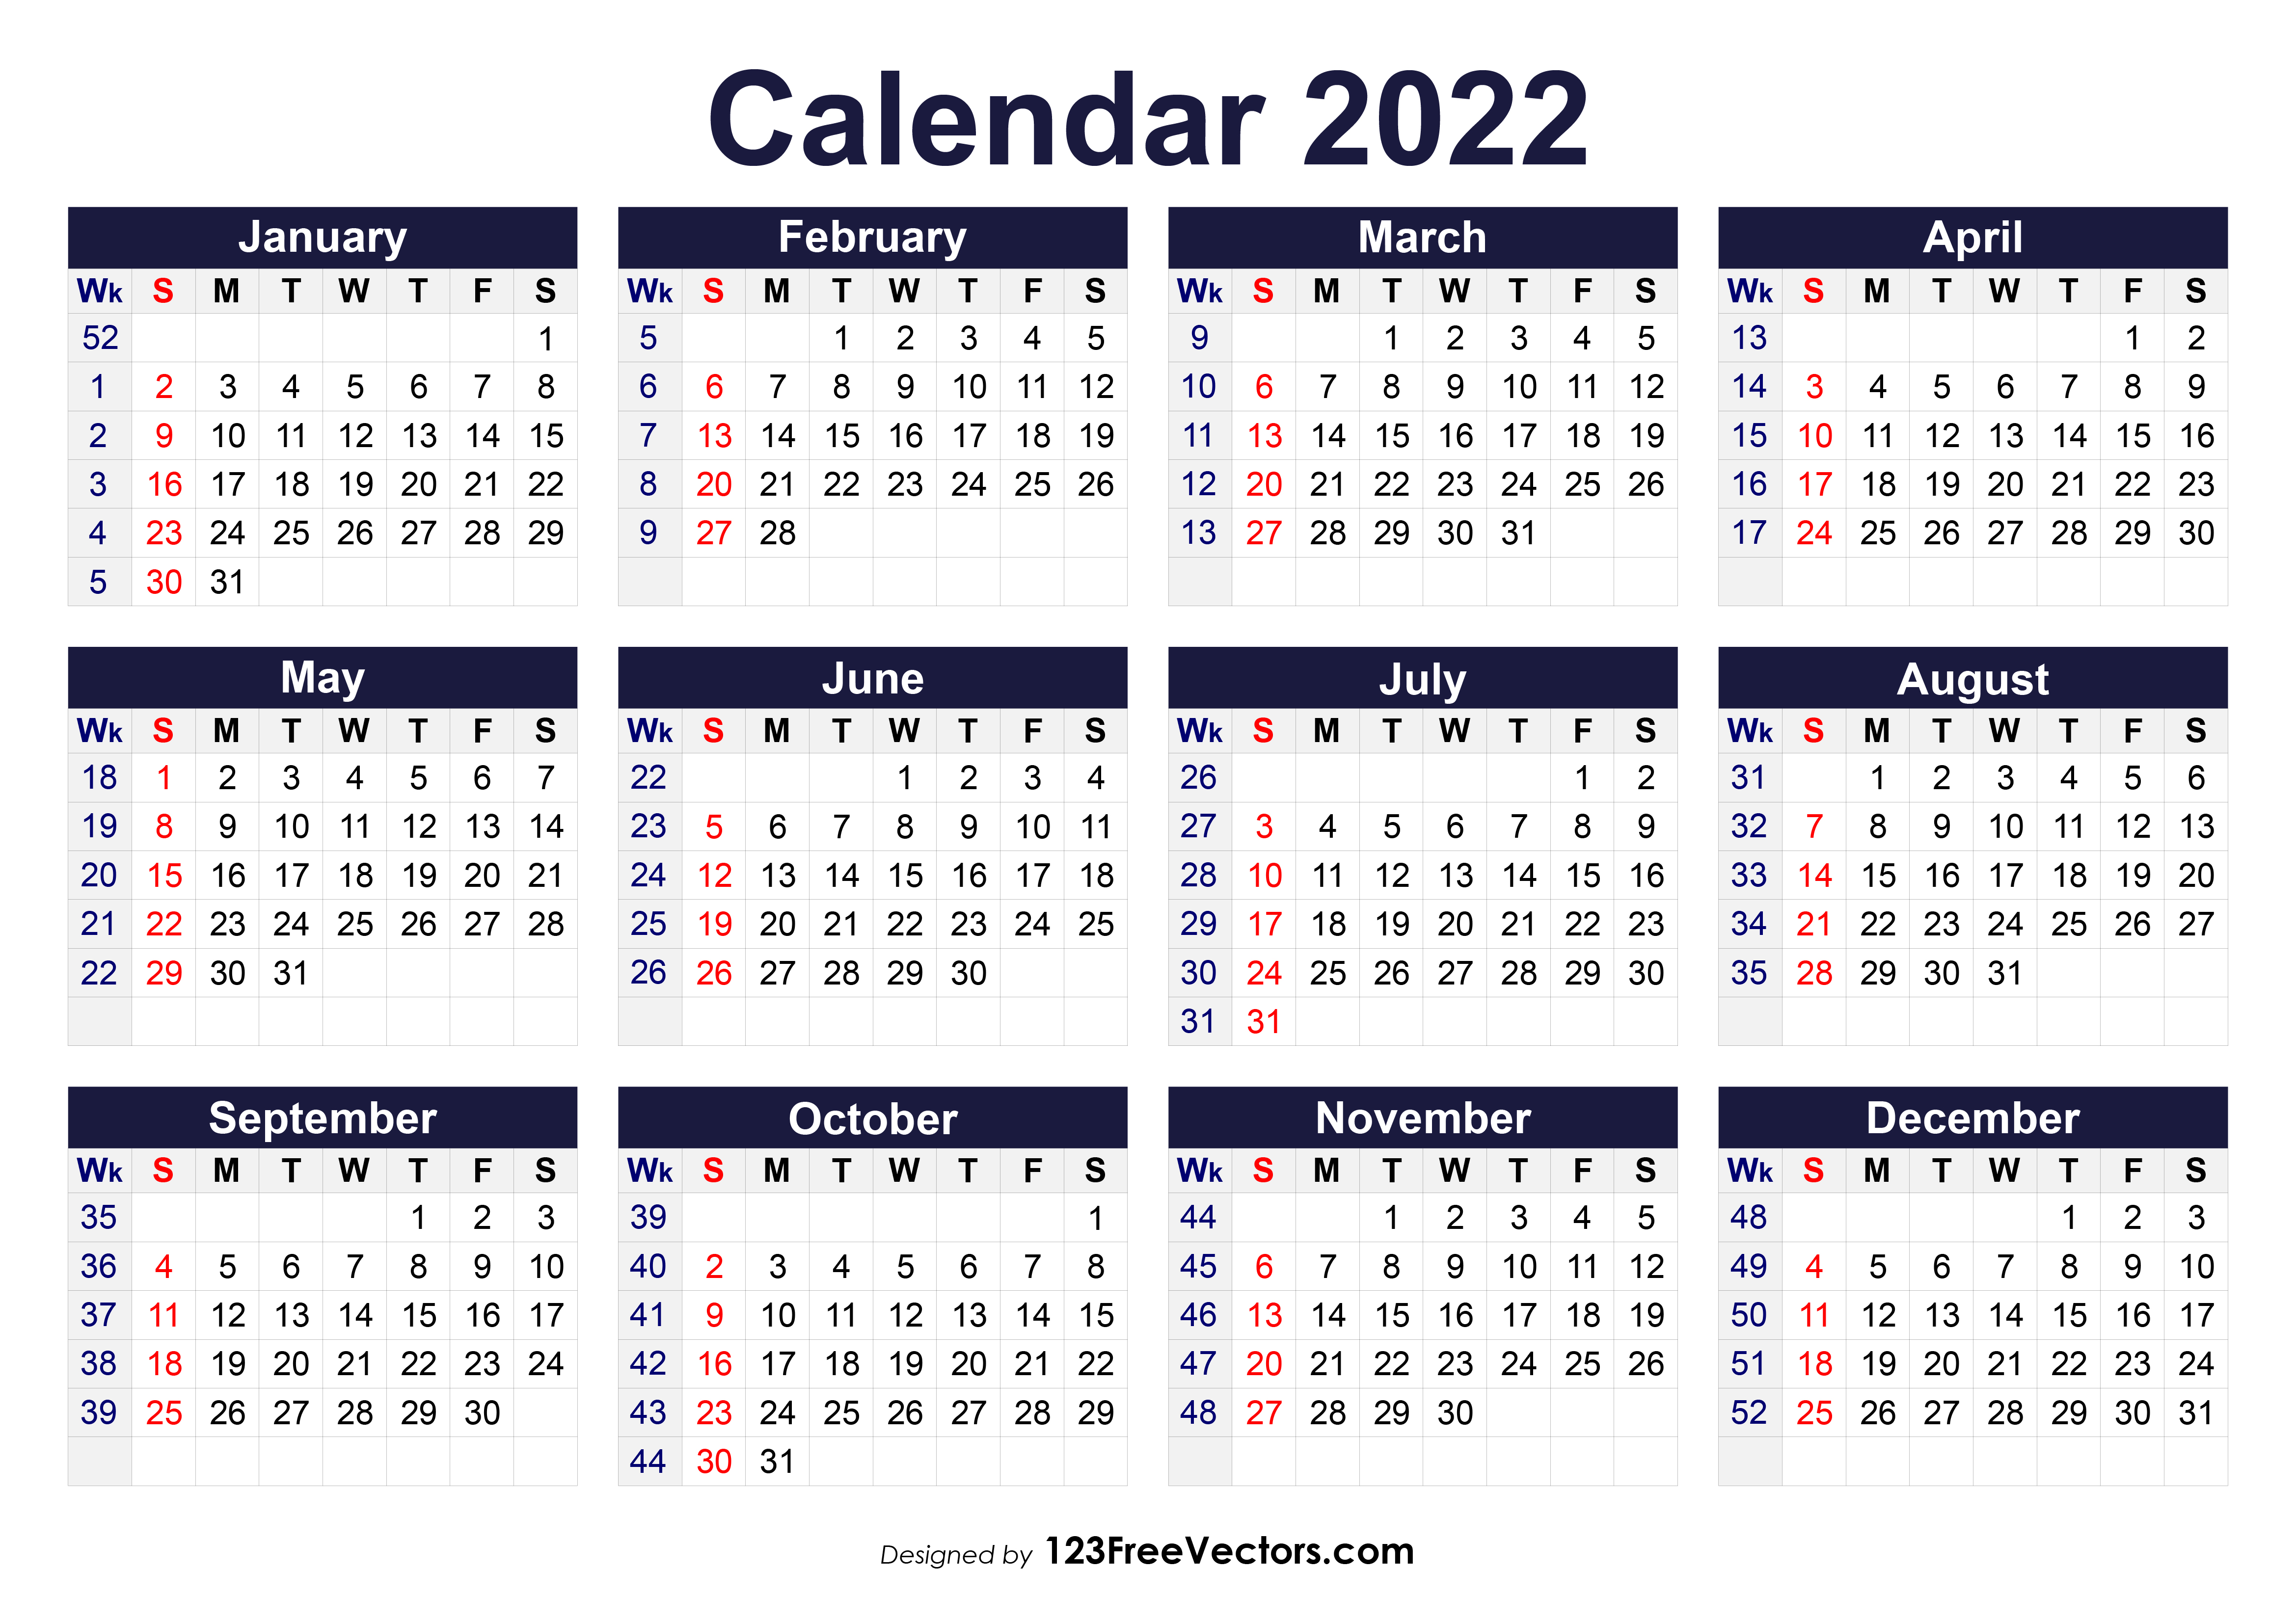 Free Printable Calendar For 2022 Free Printable 2022 Calendar With Week Numbers